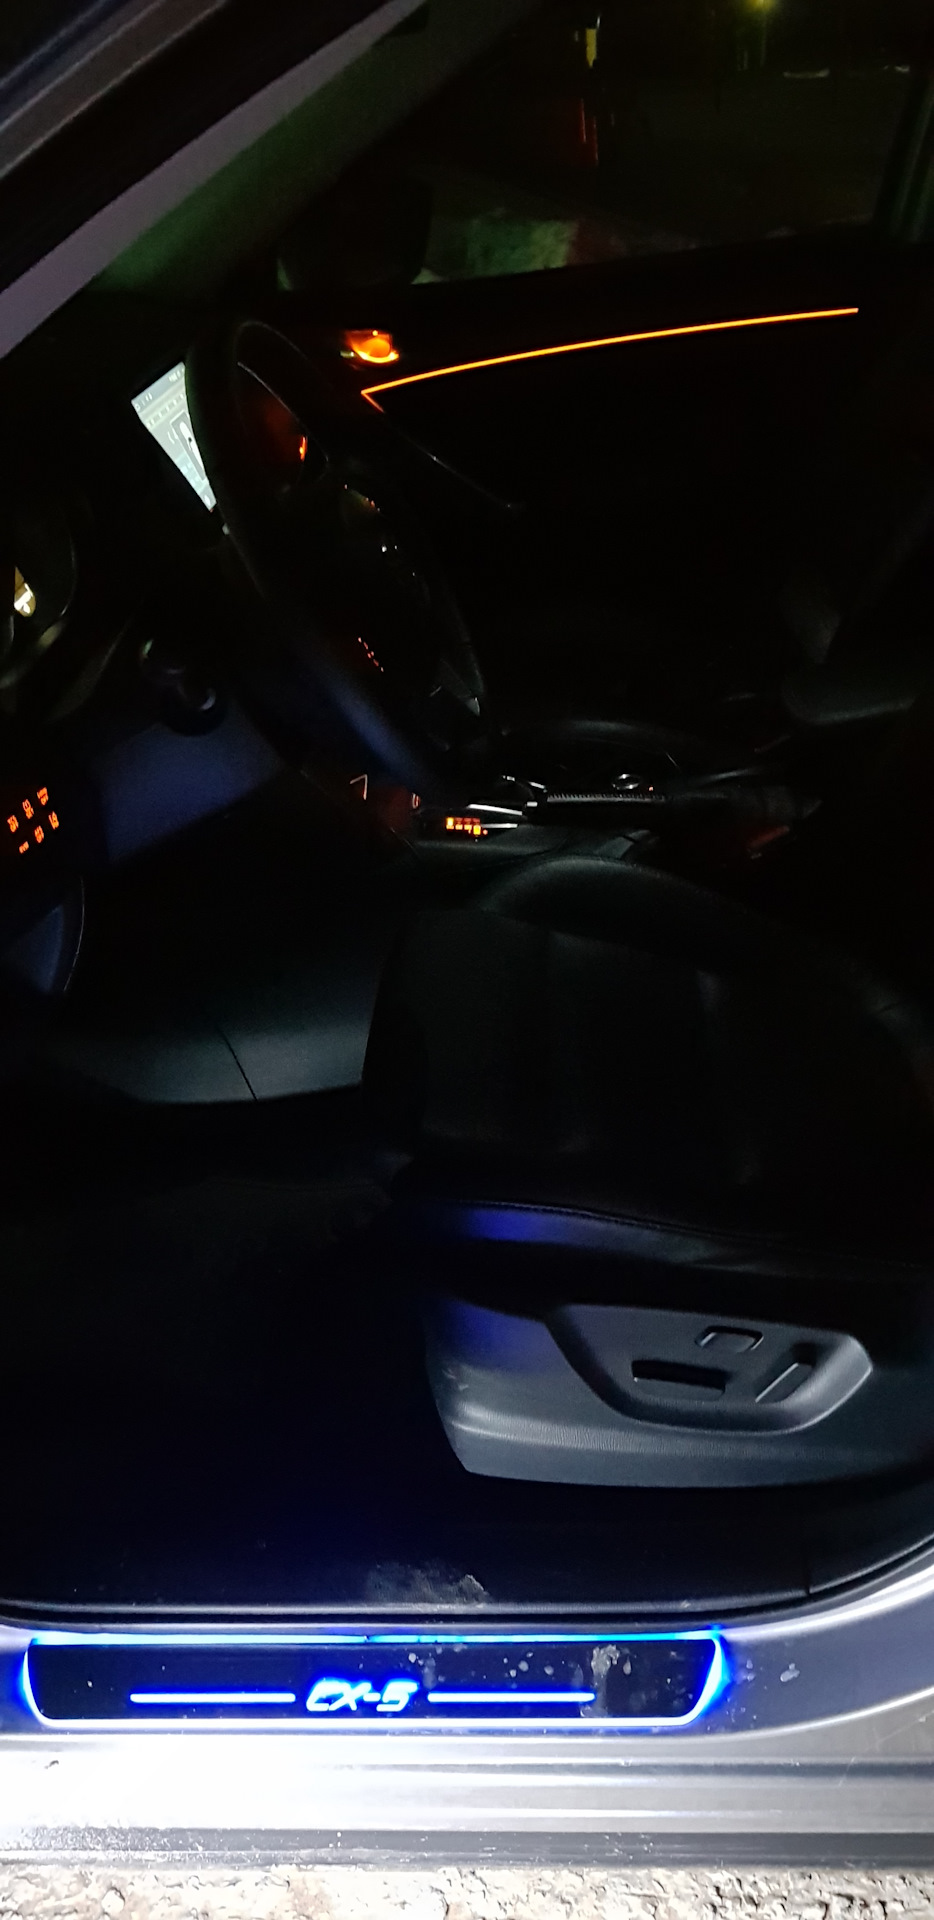 Подсветка мазда сх5. Ambient подсветка Мазда CX-5. Контурная подсветка салона Мазда СХ 5. Подсветка салона Мазда cx5. Подсветка салона Мазда сх5 2014.